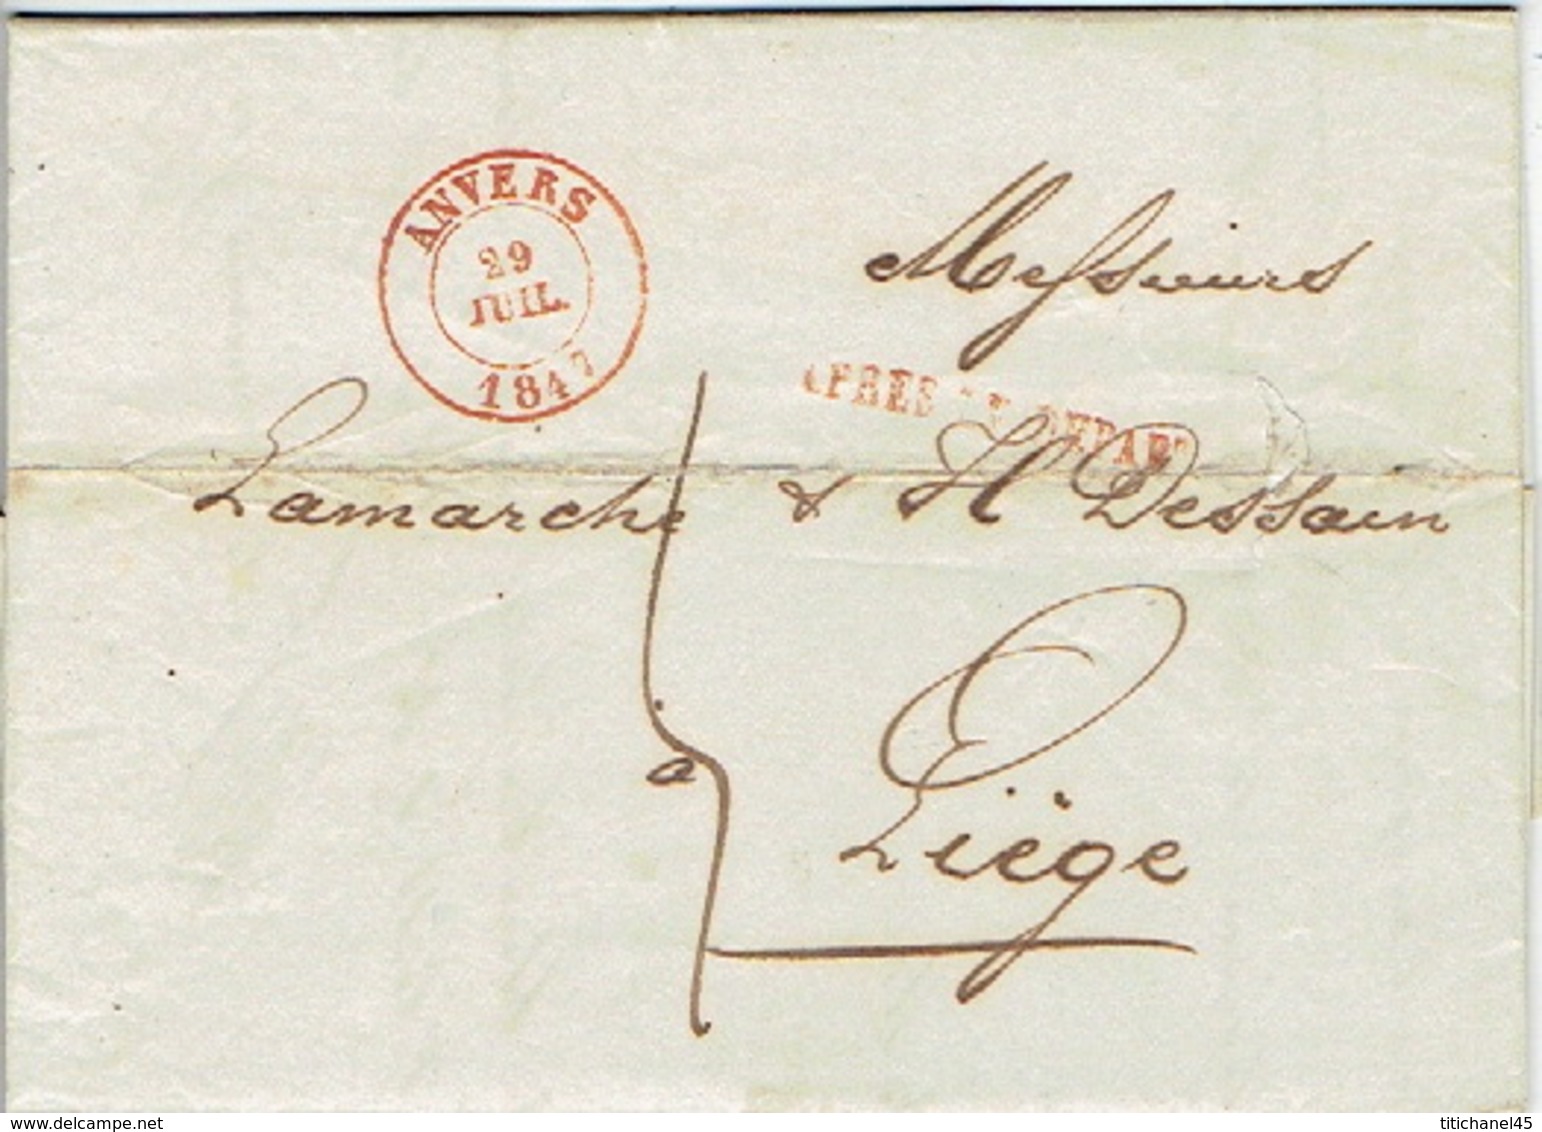 LAC D'ANVERS Datée Du 29 JUILLET 1847 Vers LIEGE + Griffe "APRES LE DEPART" Lettre Signée De GERMAIN Jos. ESSINGH - 1830-1849 (Belgique Indépendante)